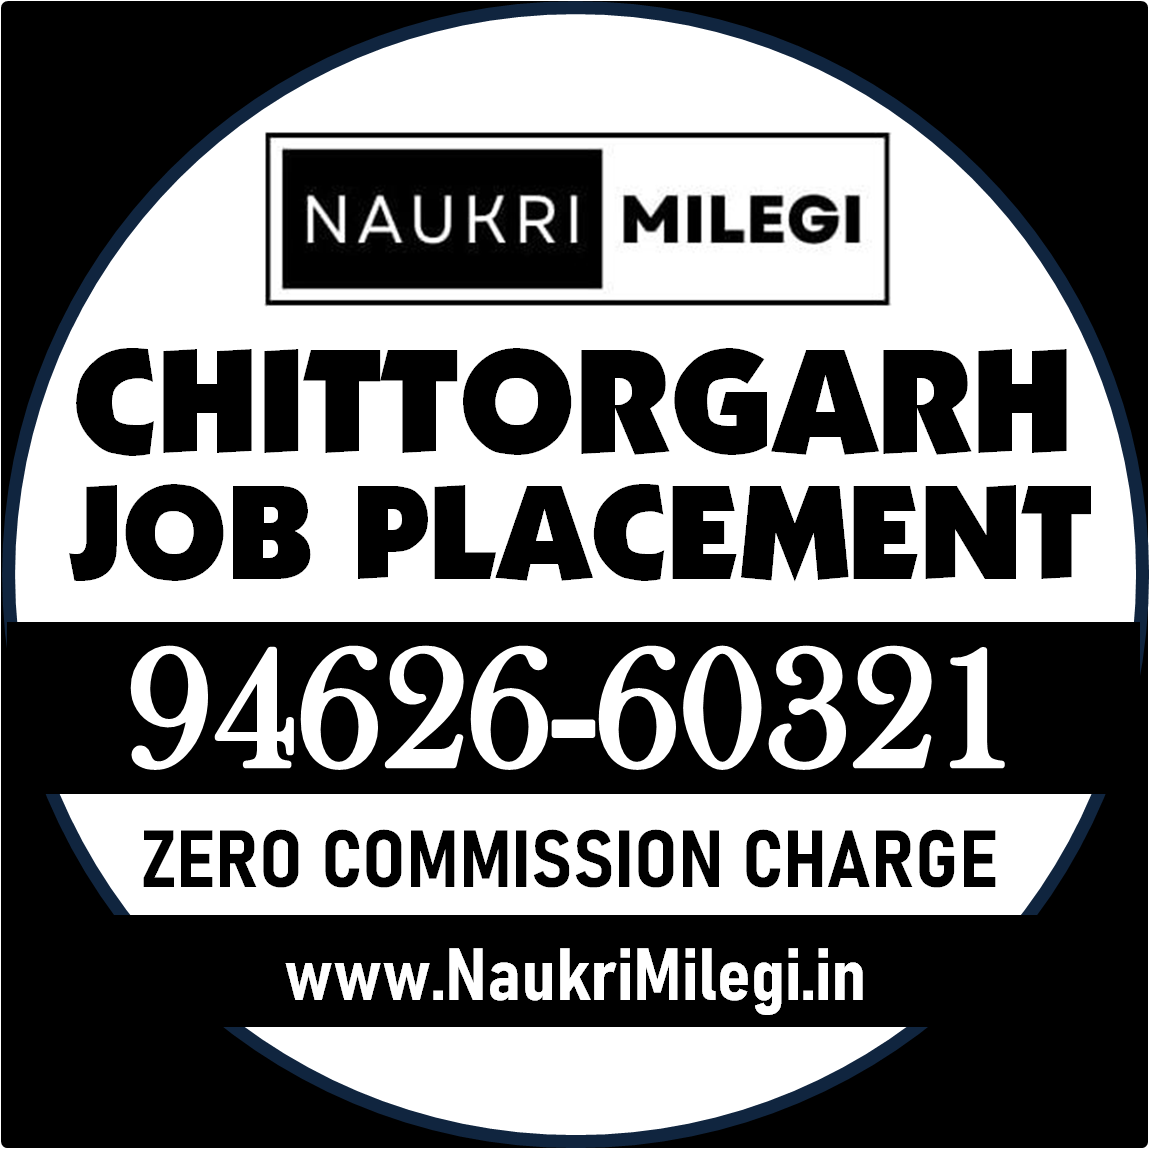 Chittorgarh Job Placement